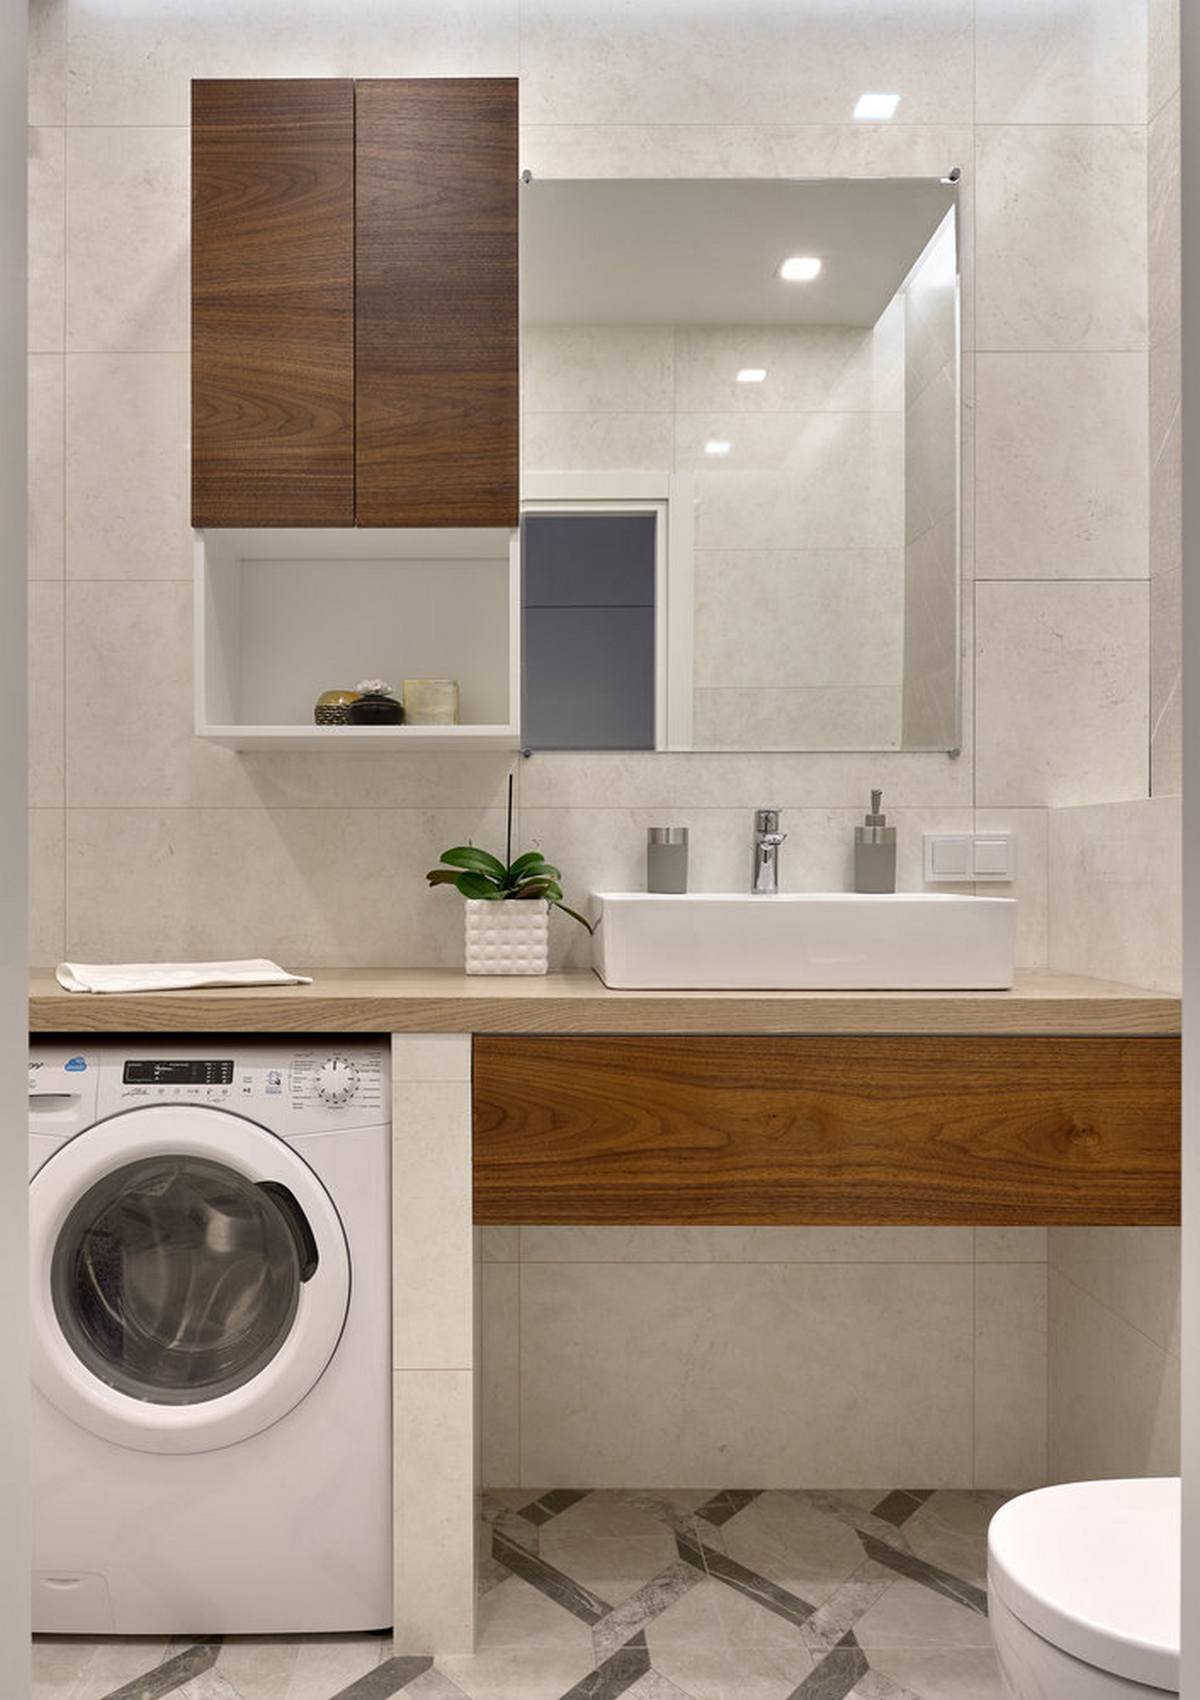 Tấm gương hình chữ nhật treo dọc bức tường giúp 'cơi nới' phòng tắm, bên dưới kệ đặt bồn rửa là khu vực dành cho chiếc máy giặt nhỏ nhắn, đáp ứng đủ yêu cầu sử dụng của hai vợ chồng.